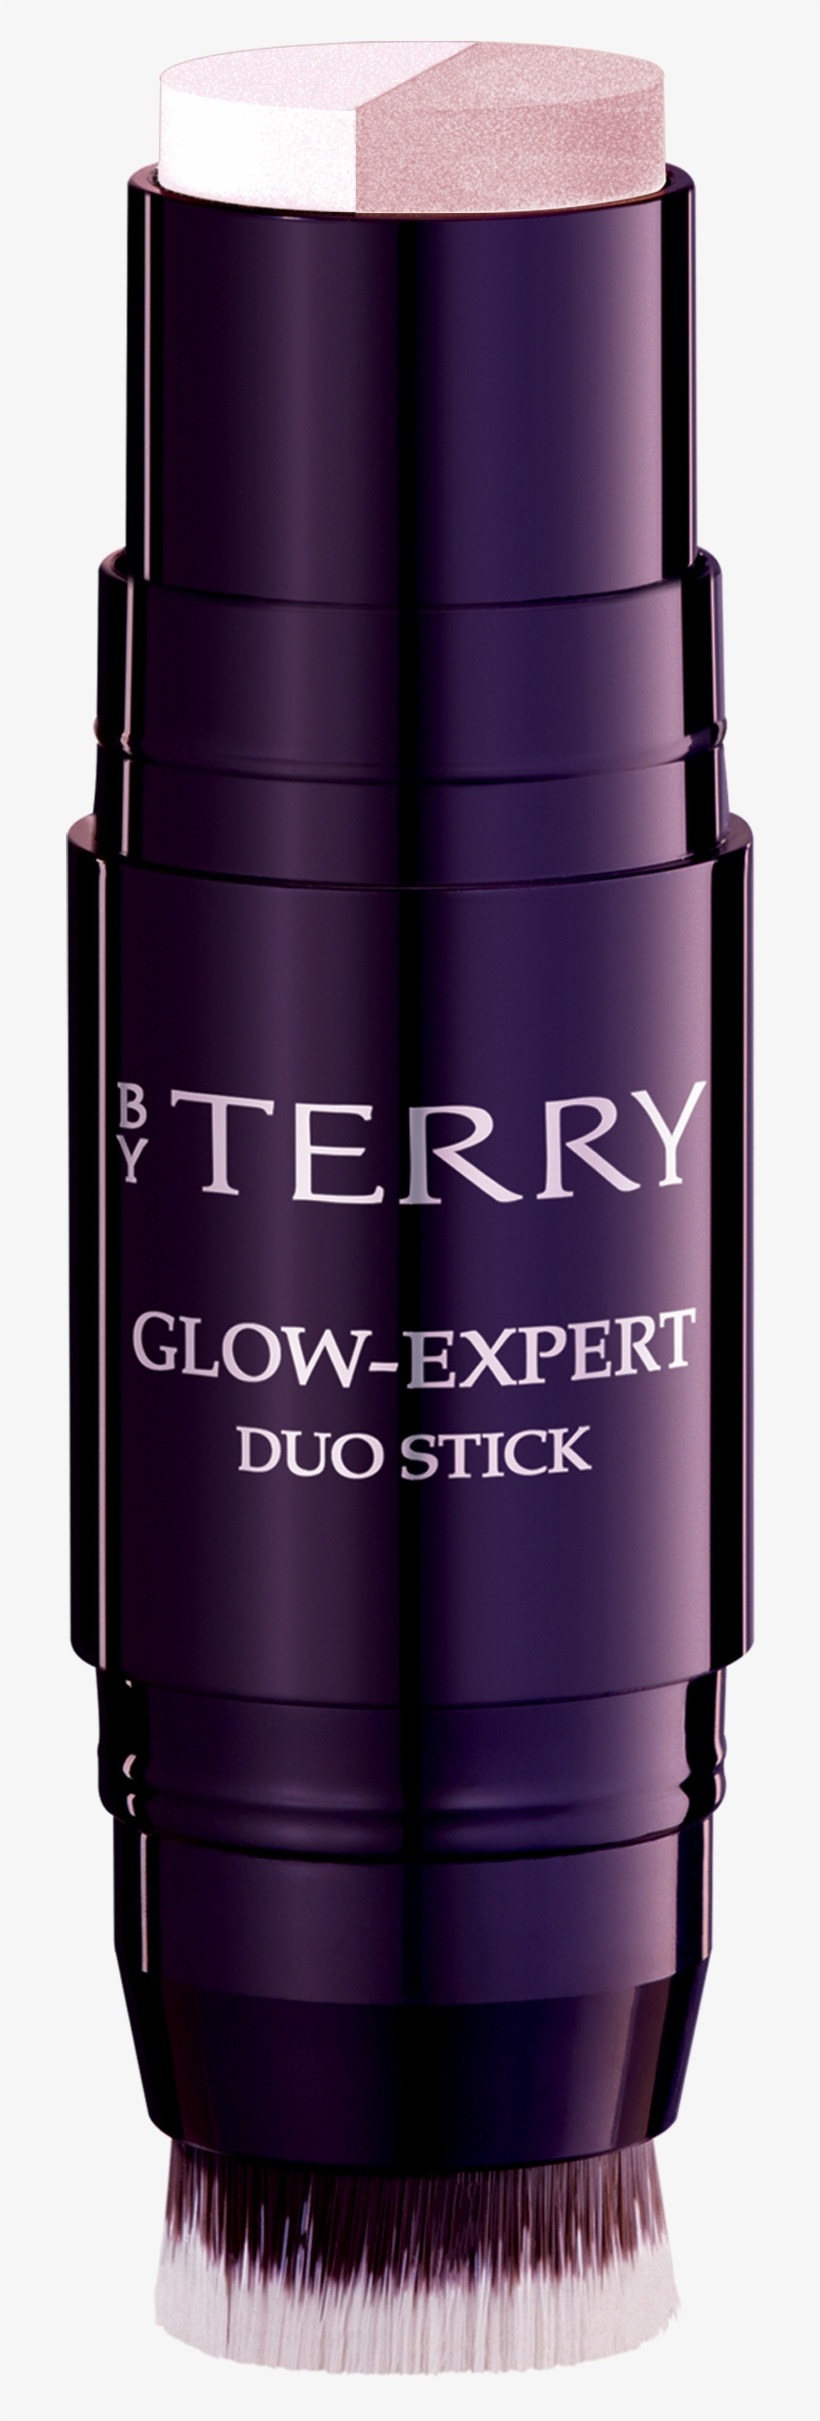 Glow-expert Duo Stick - Cosmetics, transparent png #8465058